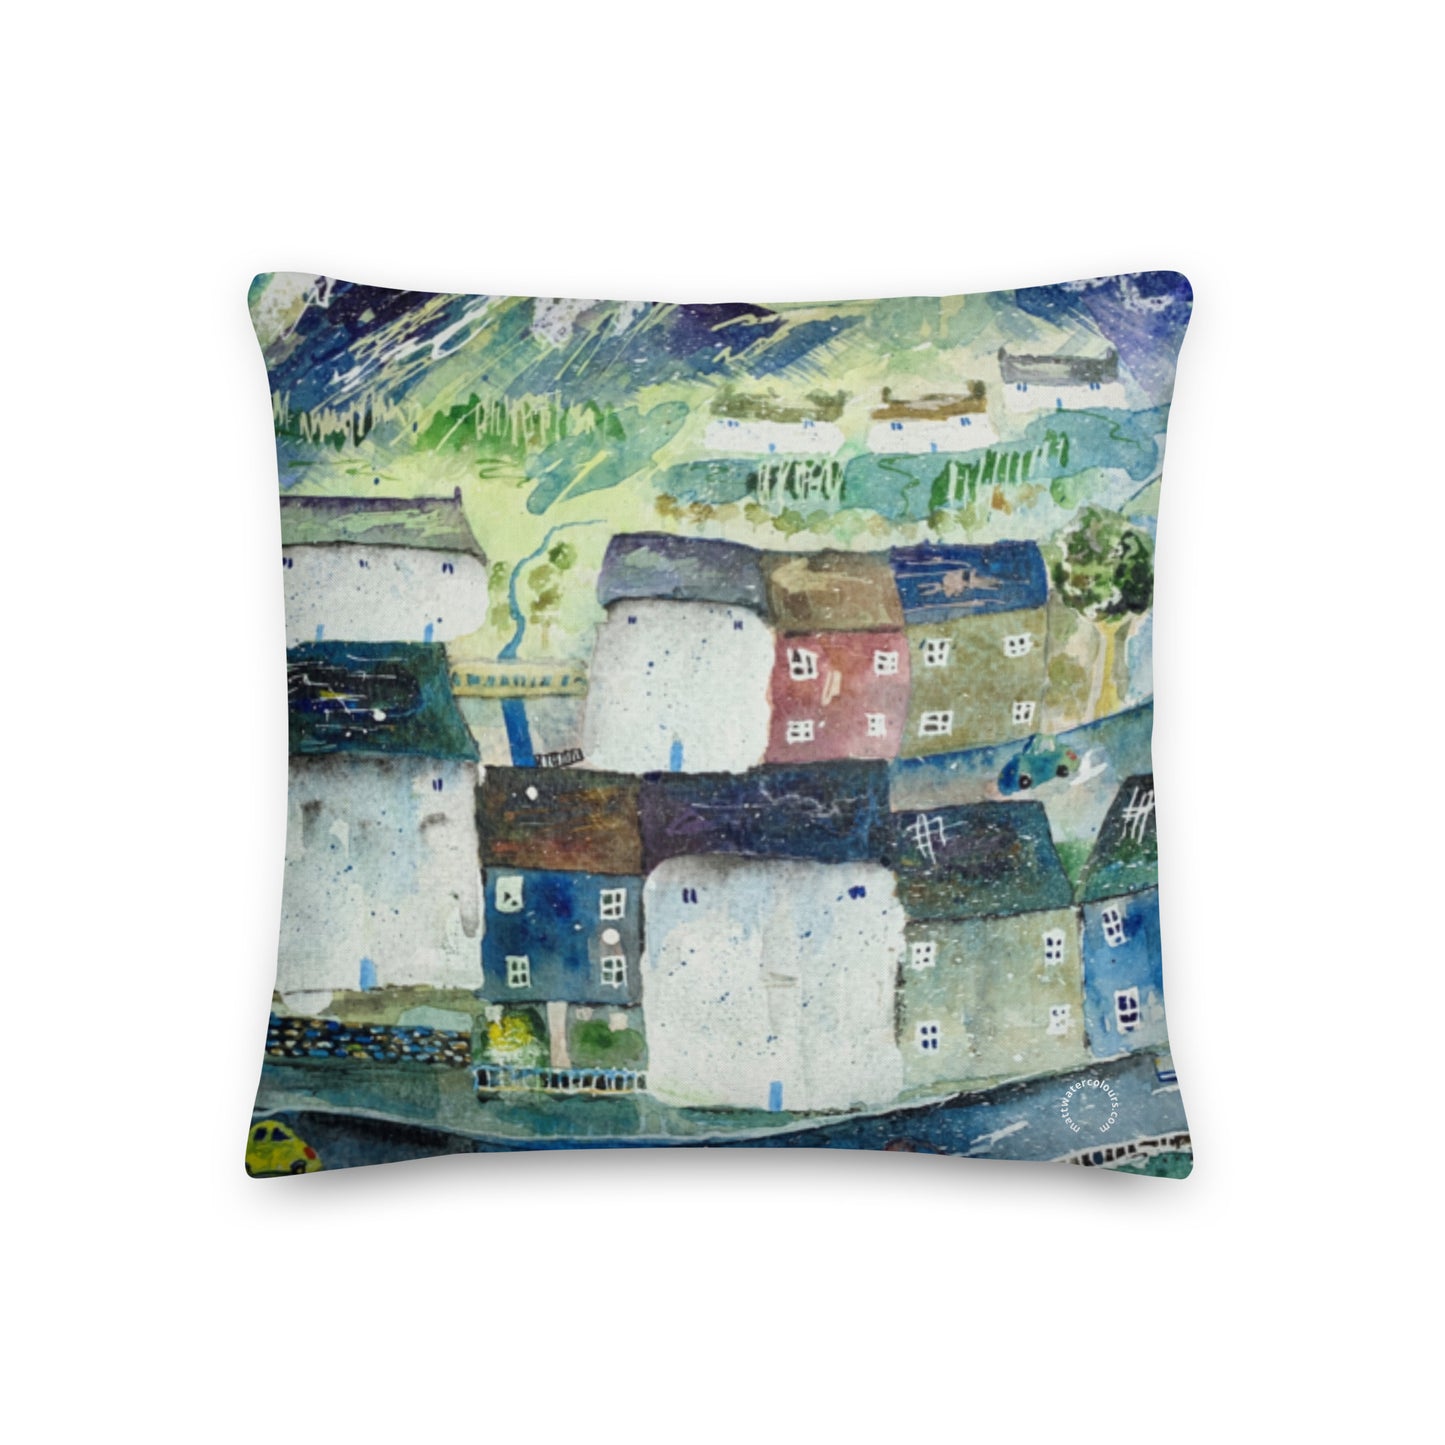 Little Village Cushion (45cm x 45cm)